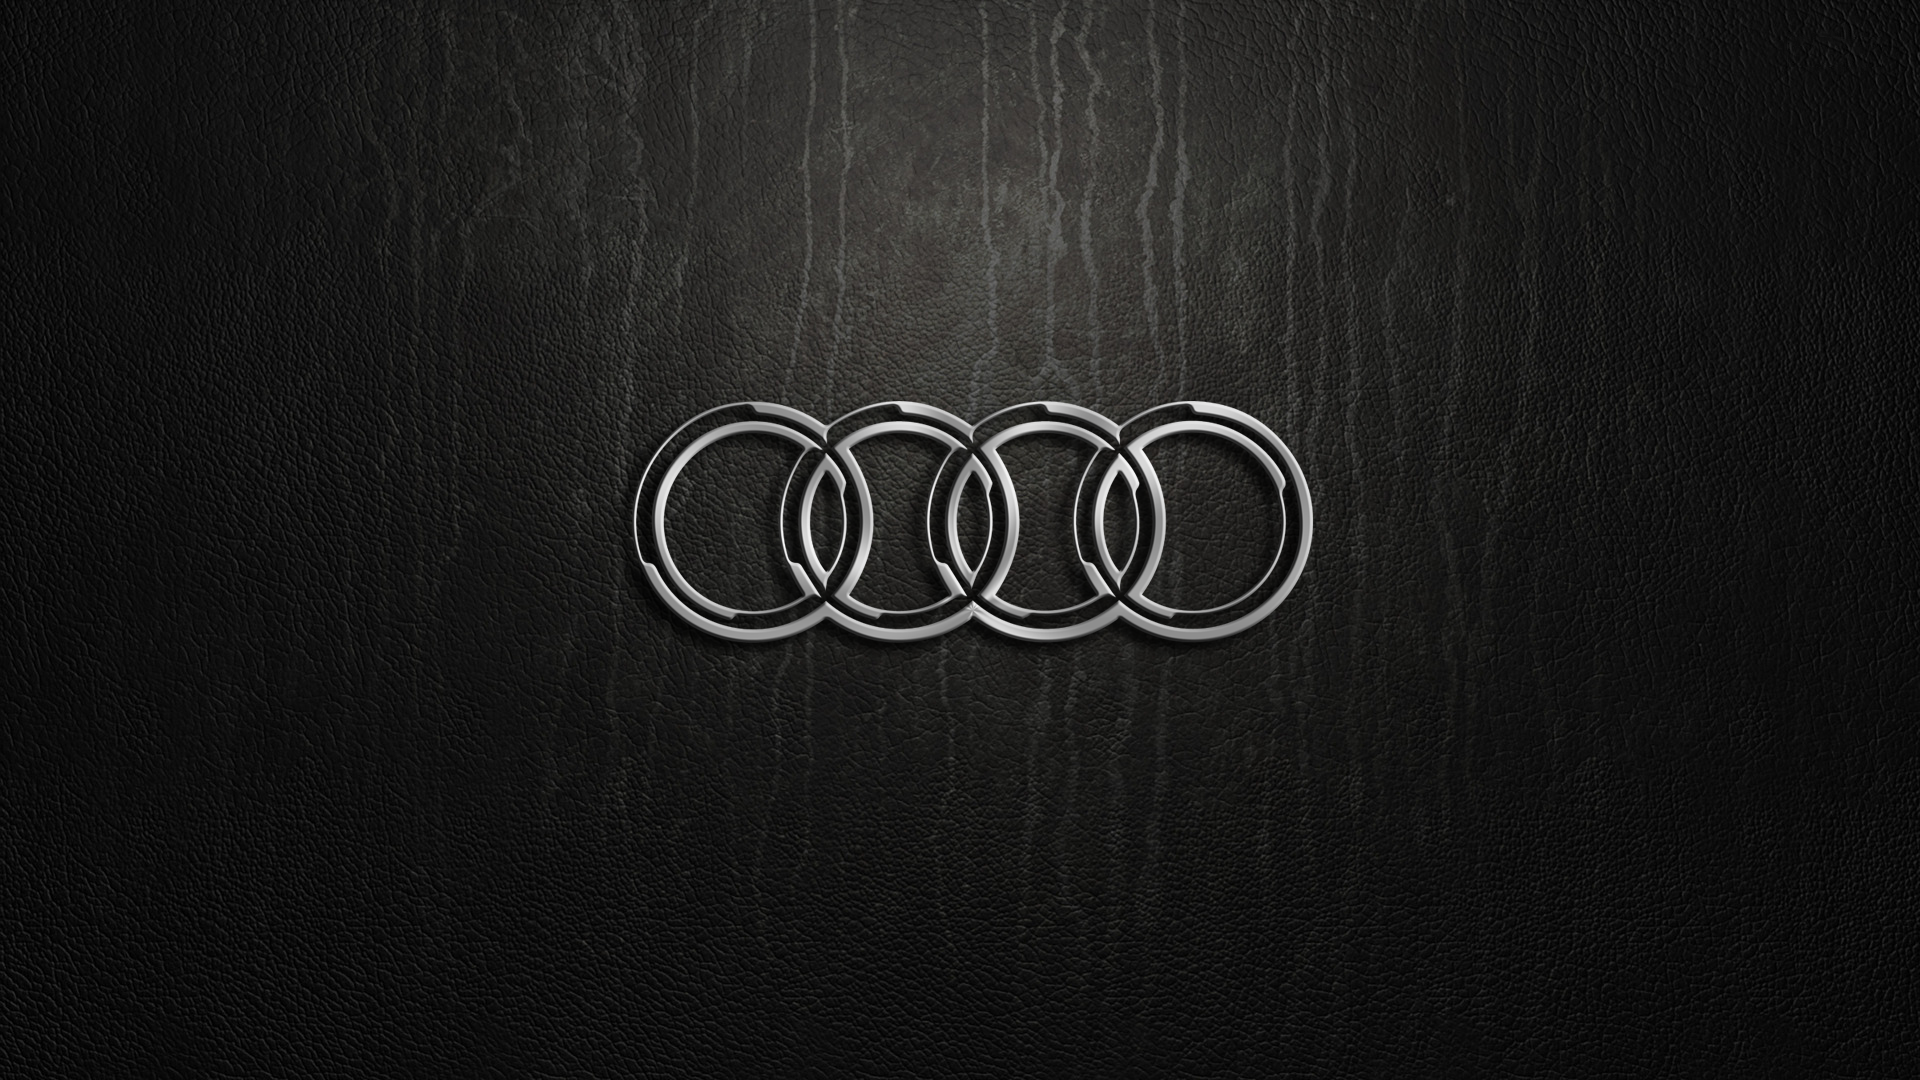 Audi Full Hd Wallpapers